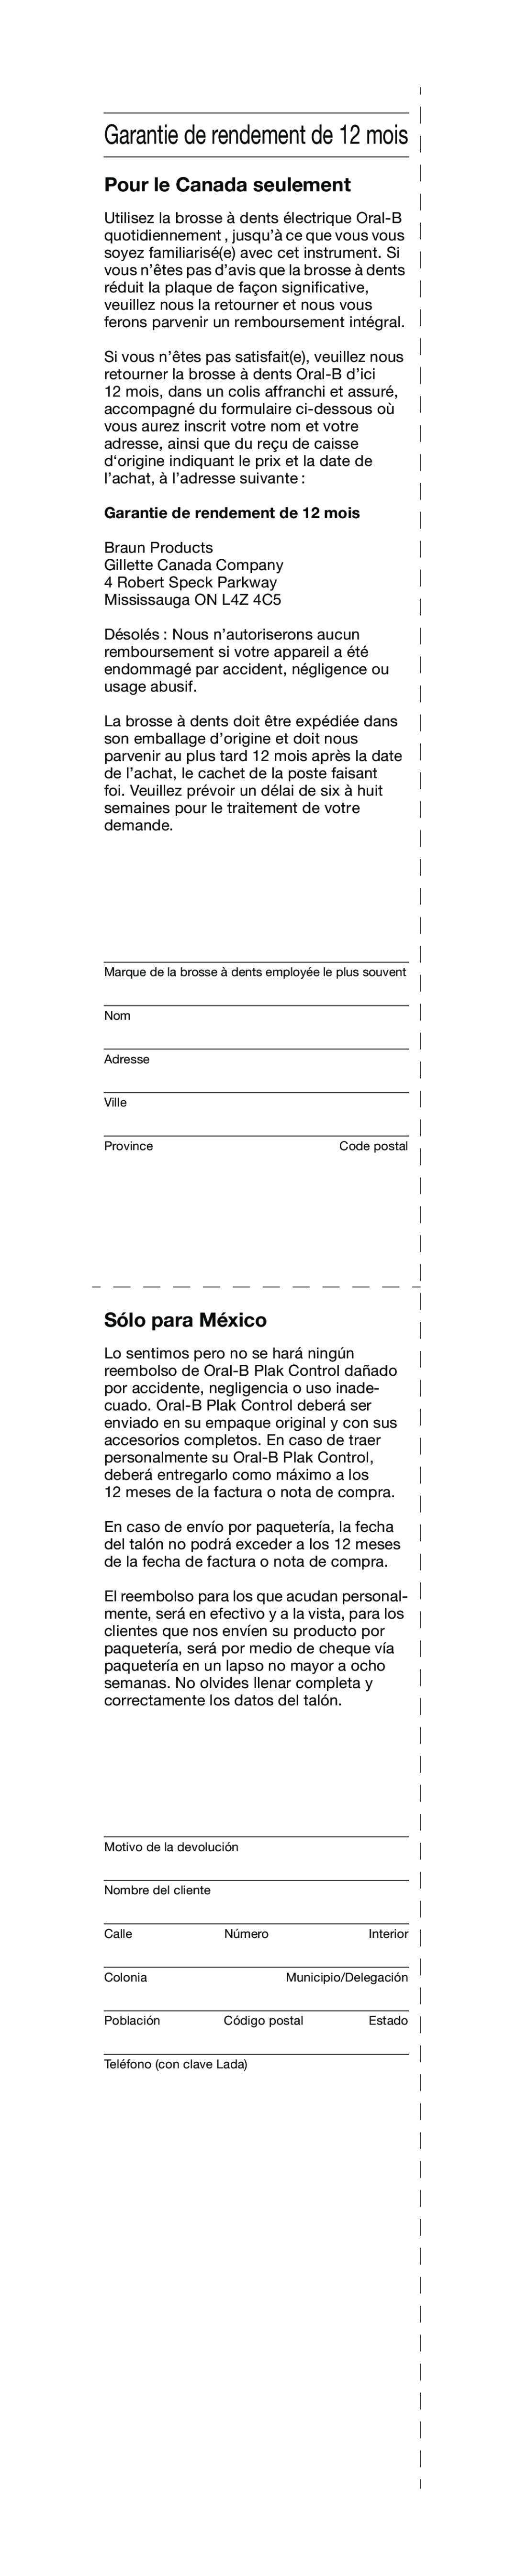 Braun 4728 manual Pour le Canada seulement, Garantie de rendement de 12 mois, Sólo para México 